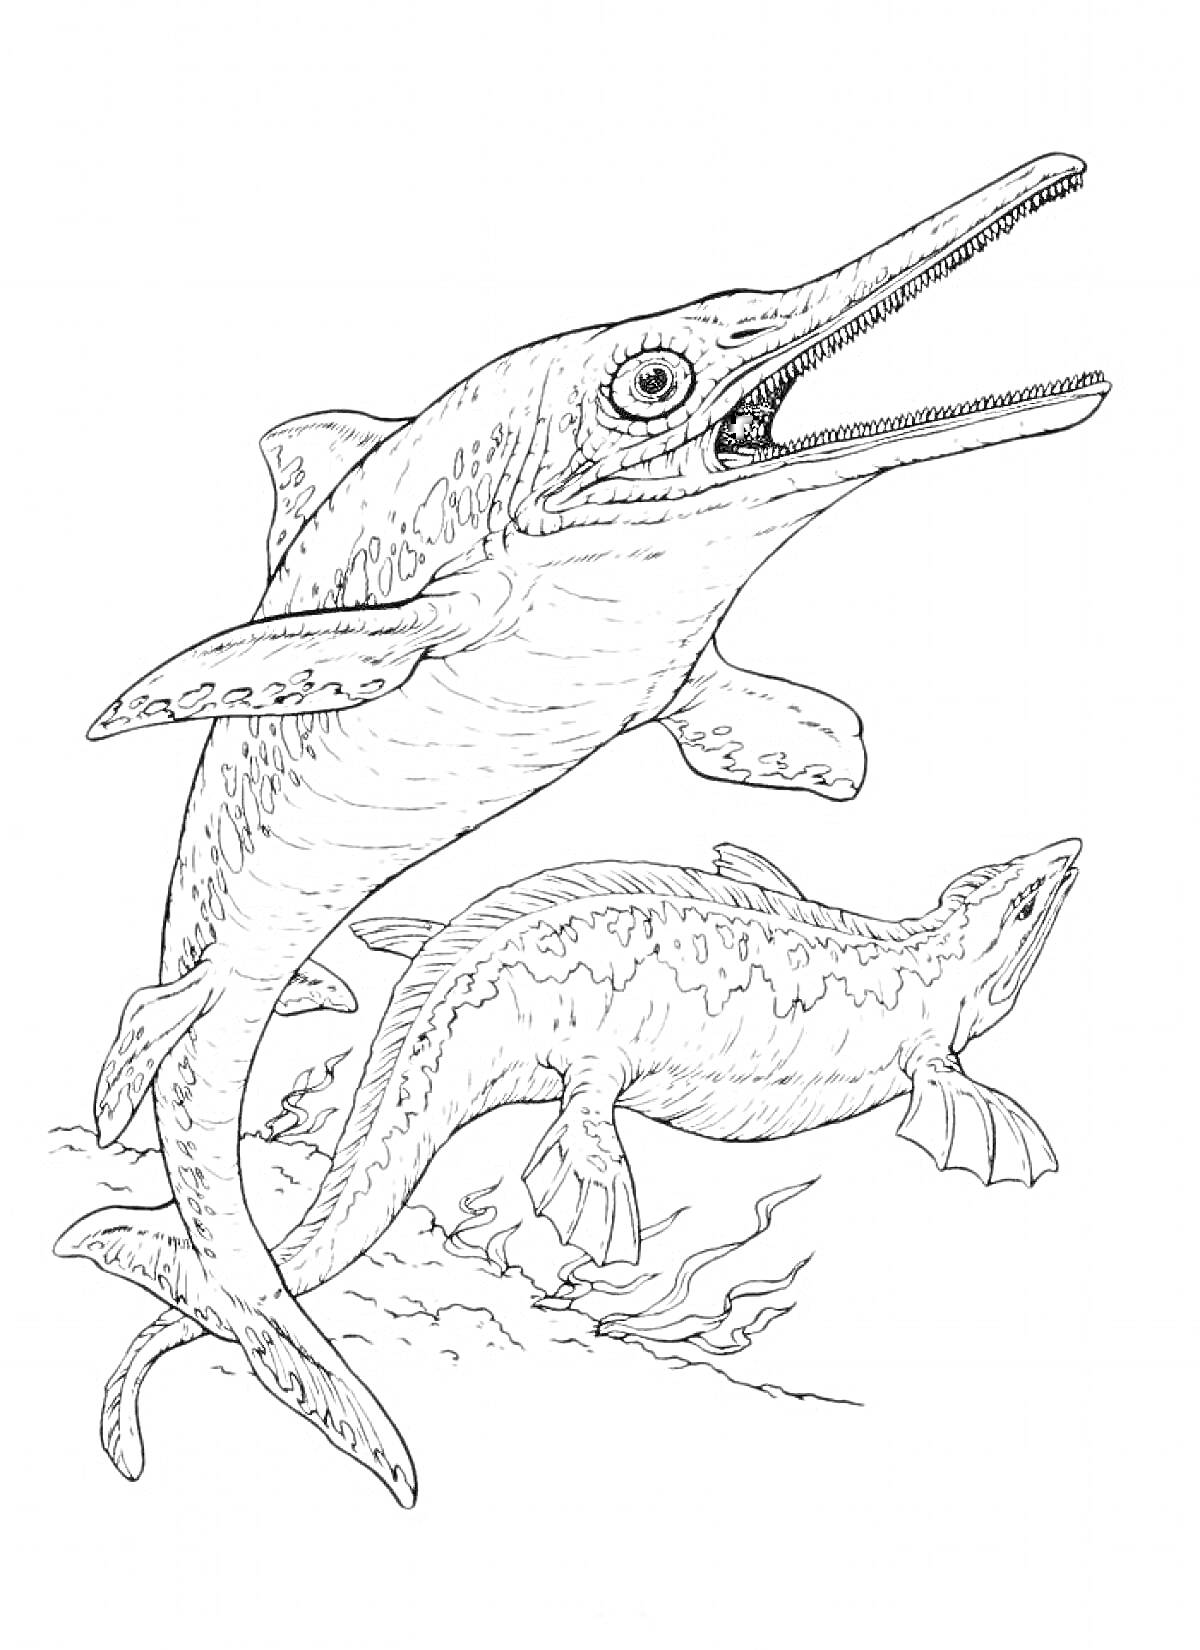 Раскраска Ихтиозавры в подводном мире с водорослями на дне